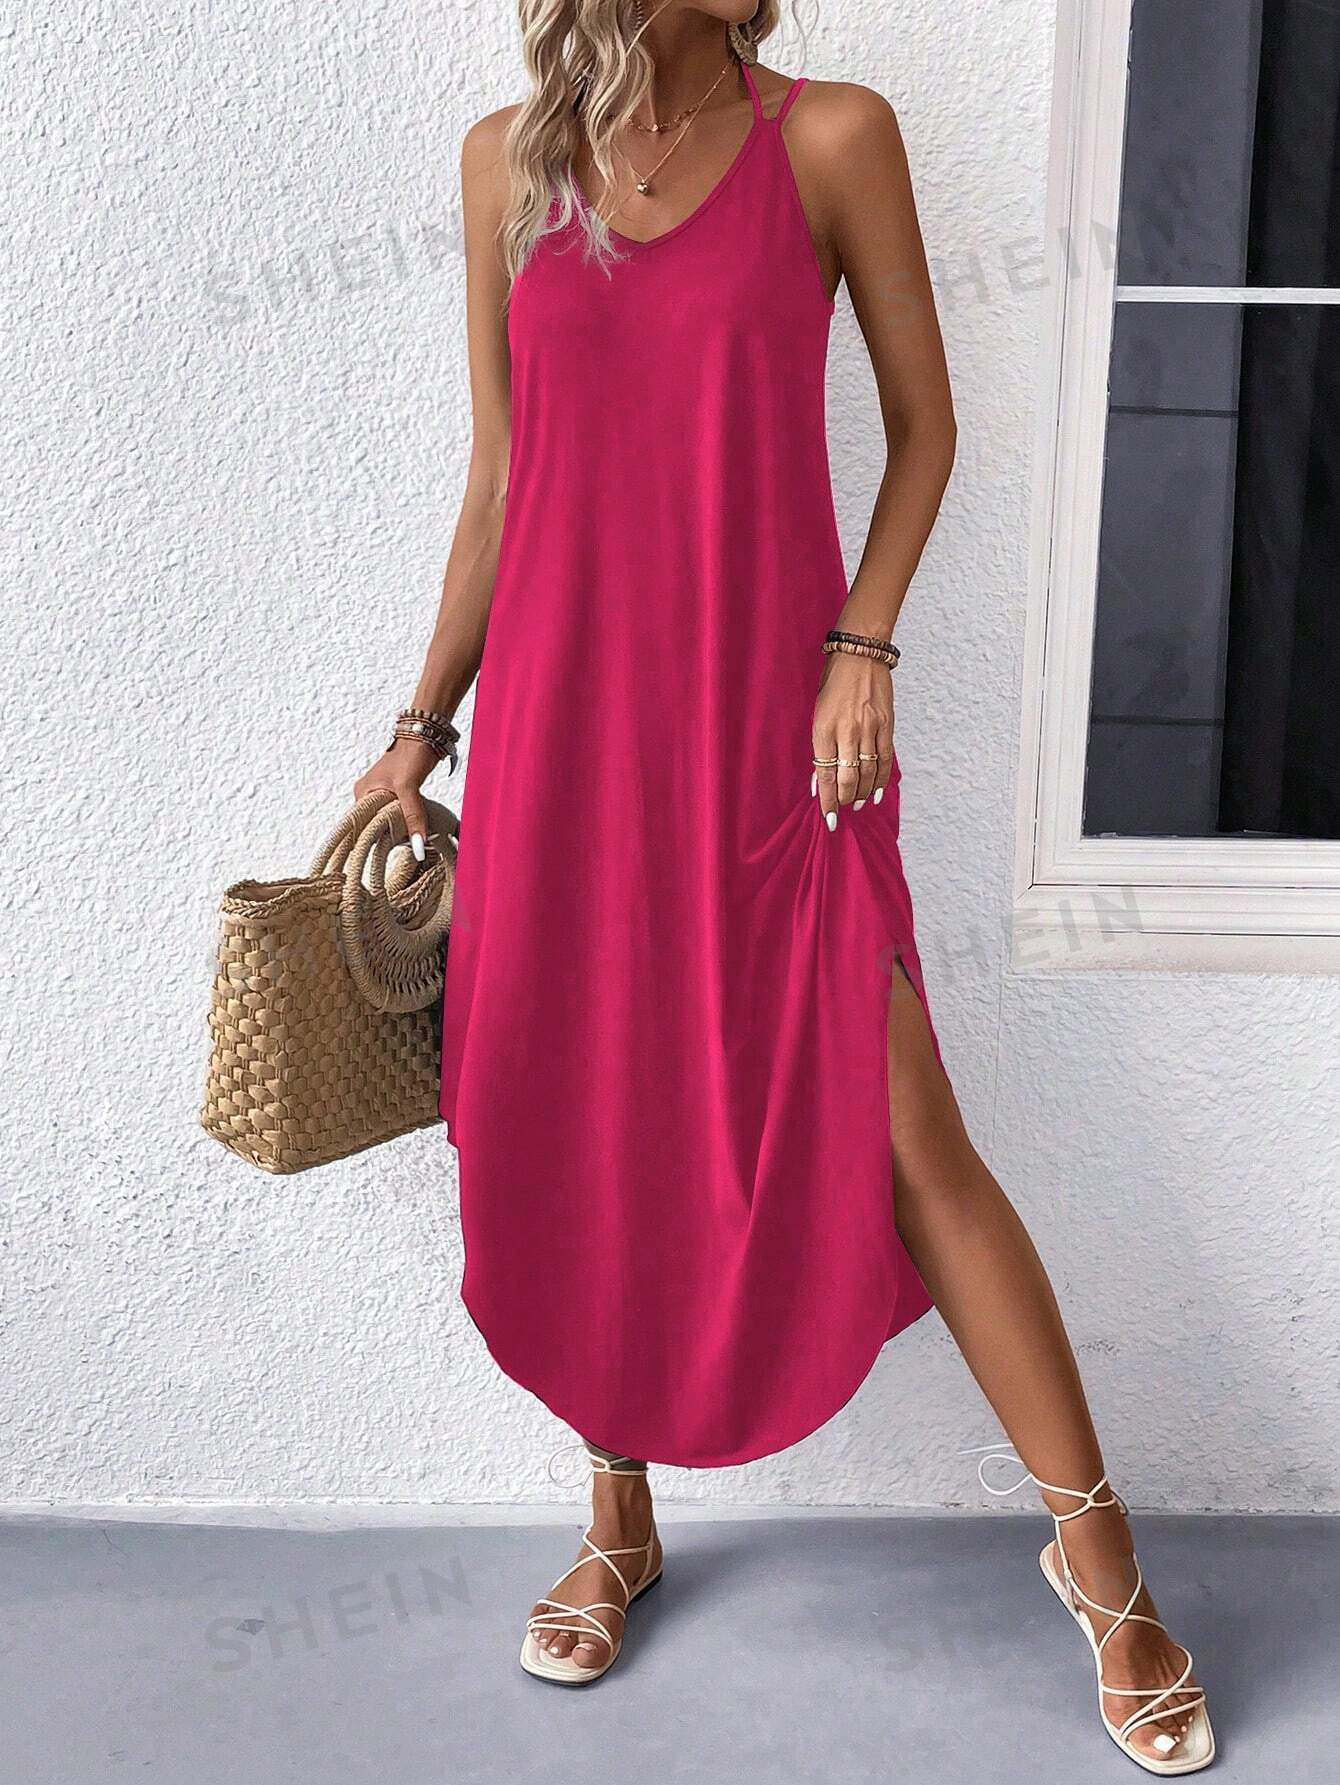 Сплошное платье с воротником-стойкой и воротником-стойкой, ярко-розовый платье женское летнее длинное на тонких бретельках в африканском стиле